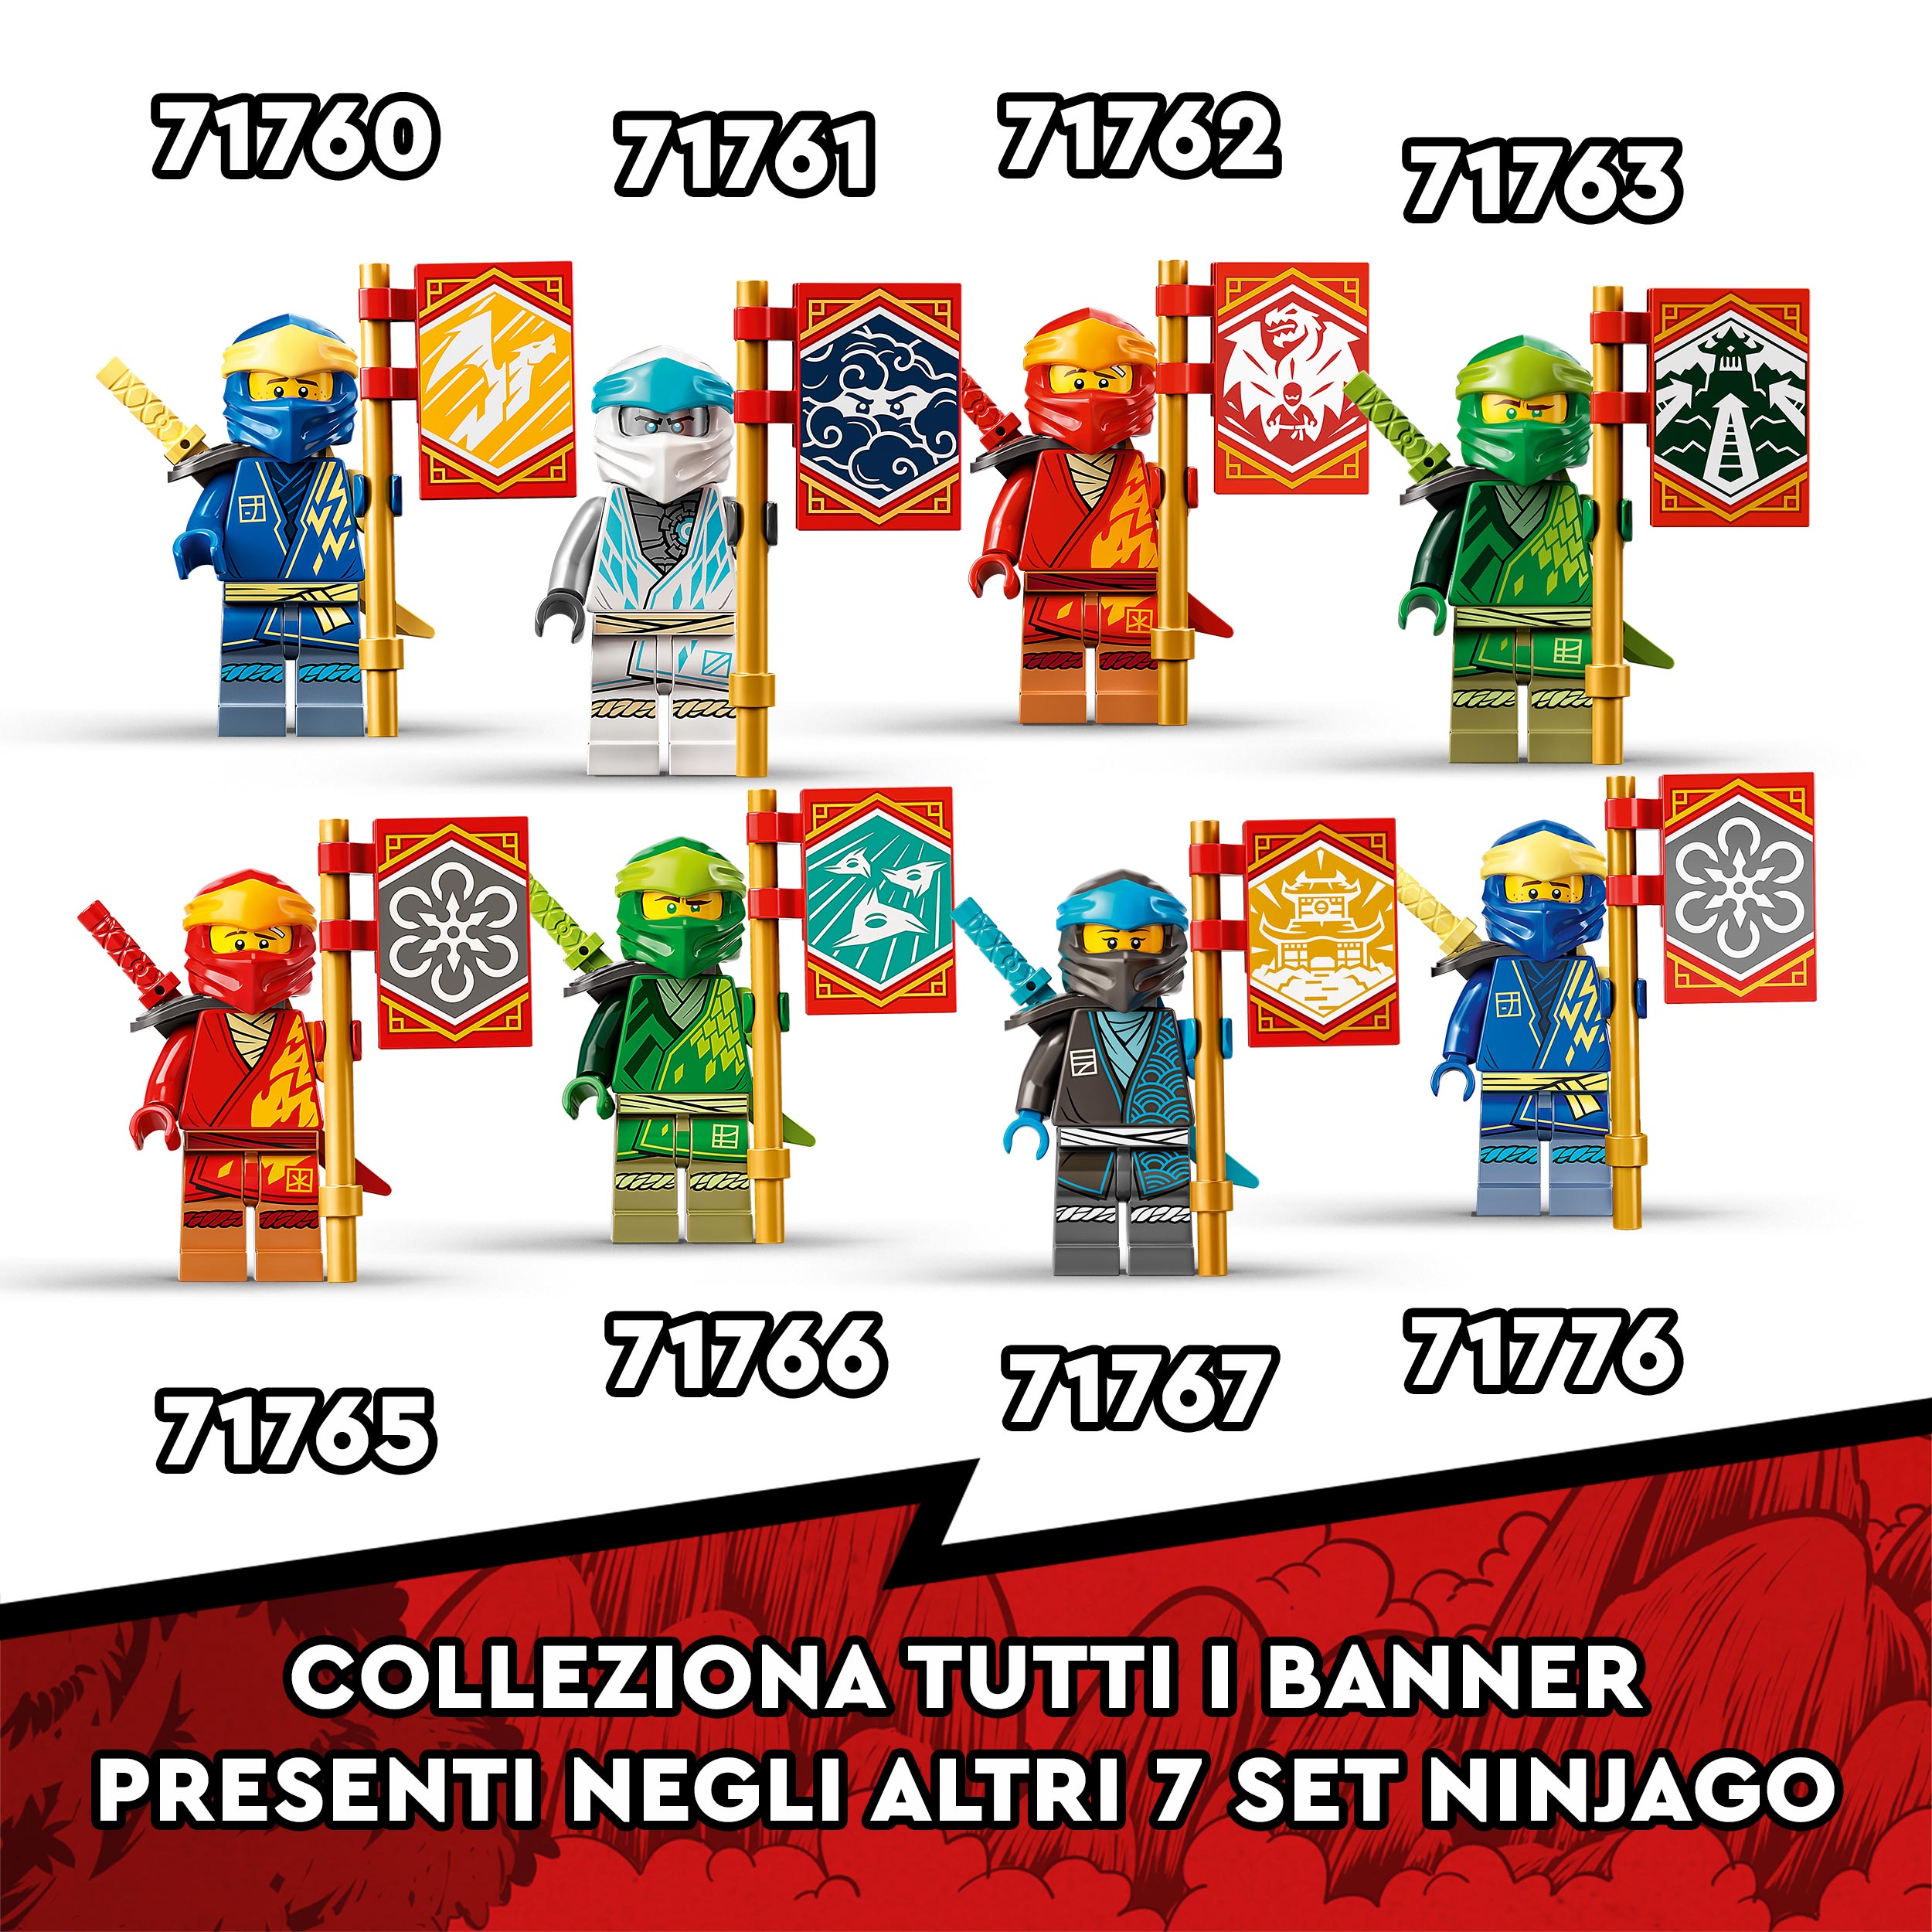 LEGO NINJAGO Dragone del Fuoco di Kai - EVOLUTION, Set per Bambini di 6 Anni con 71762, , large